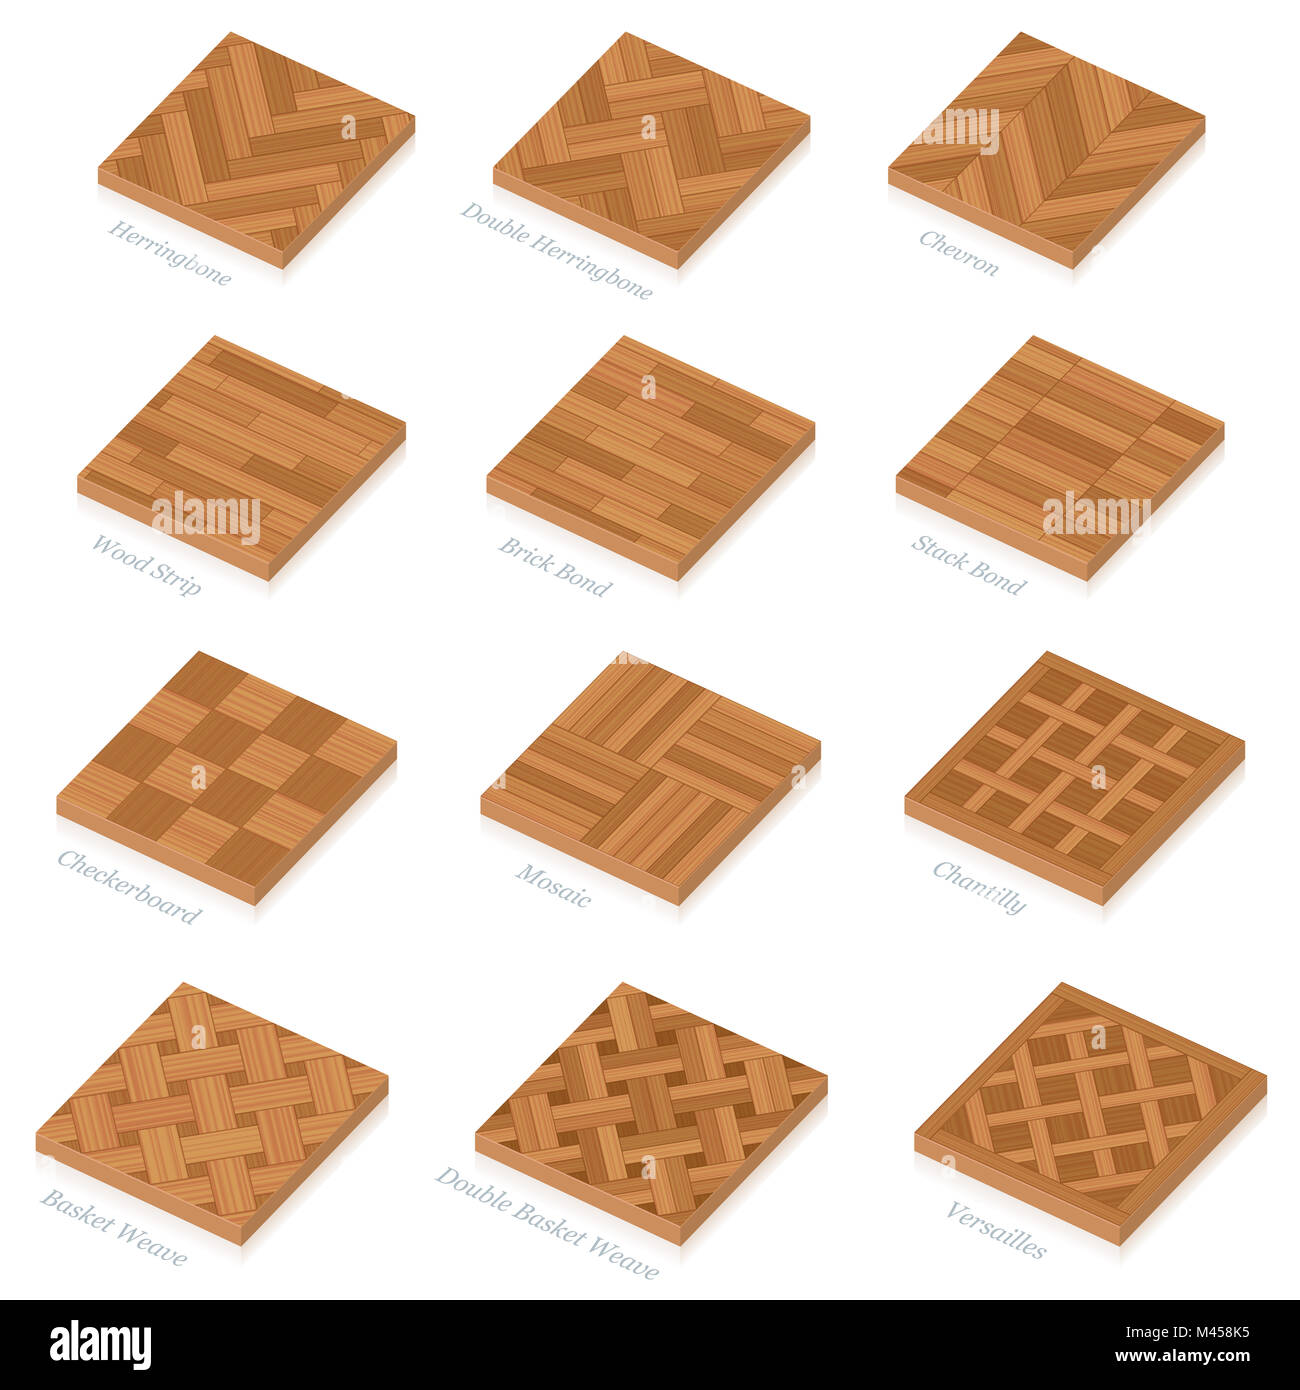 Parquetage. Trois dimensions des plaques de plancher en bois. La plupart des parquets Parquet en bois populaire avec des noms - 3D illustration sur fond blanc Banque D'Images